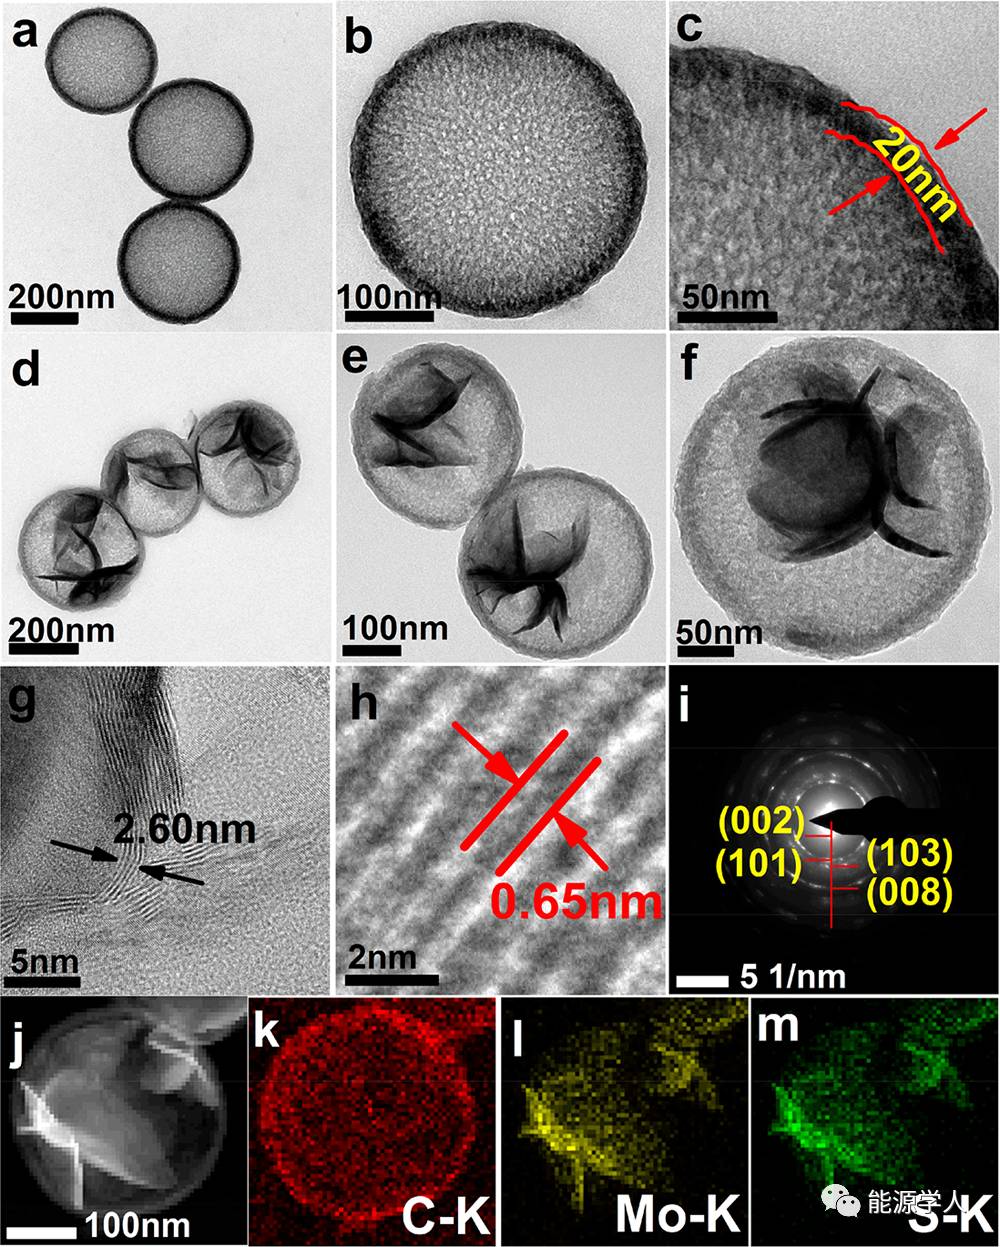 中空介孔碳球内生长花瓣状MoS2纳米片